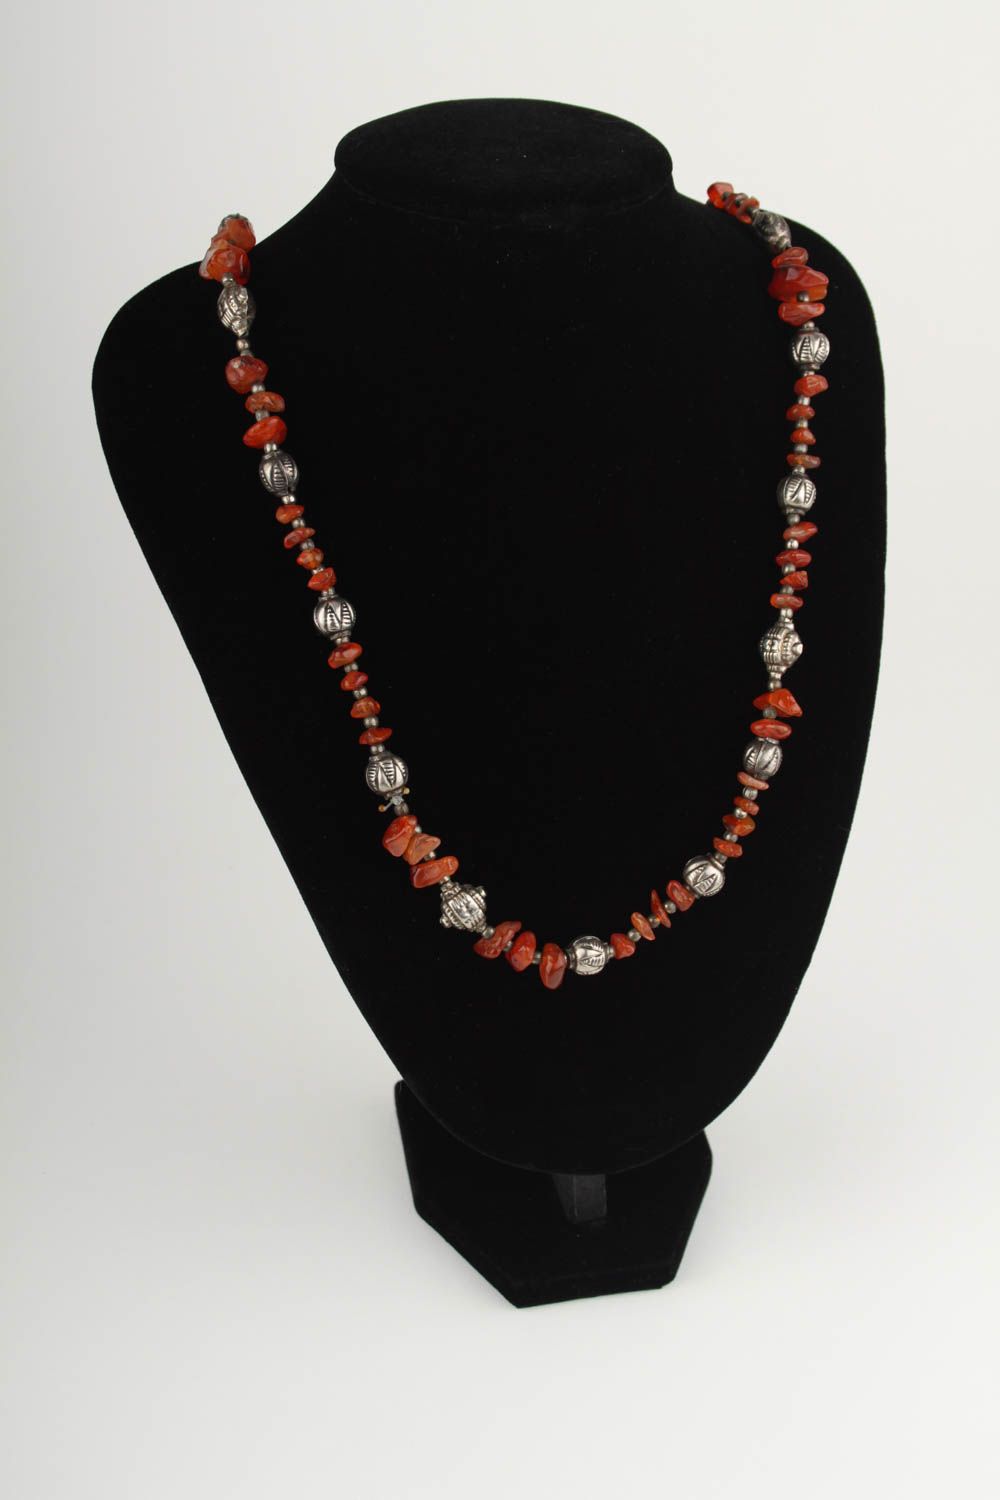 Handmade elegant necklace stylish evening necklace natural stone jewelry photo 1